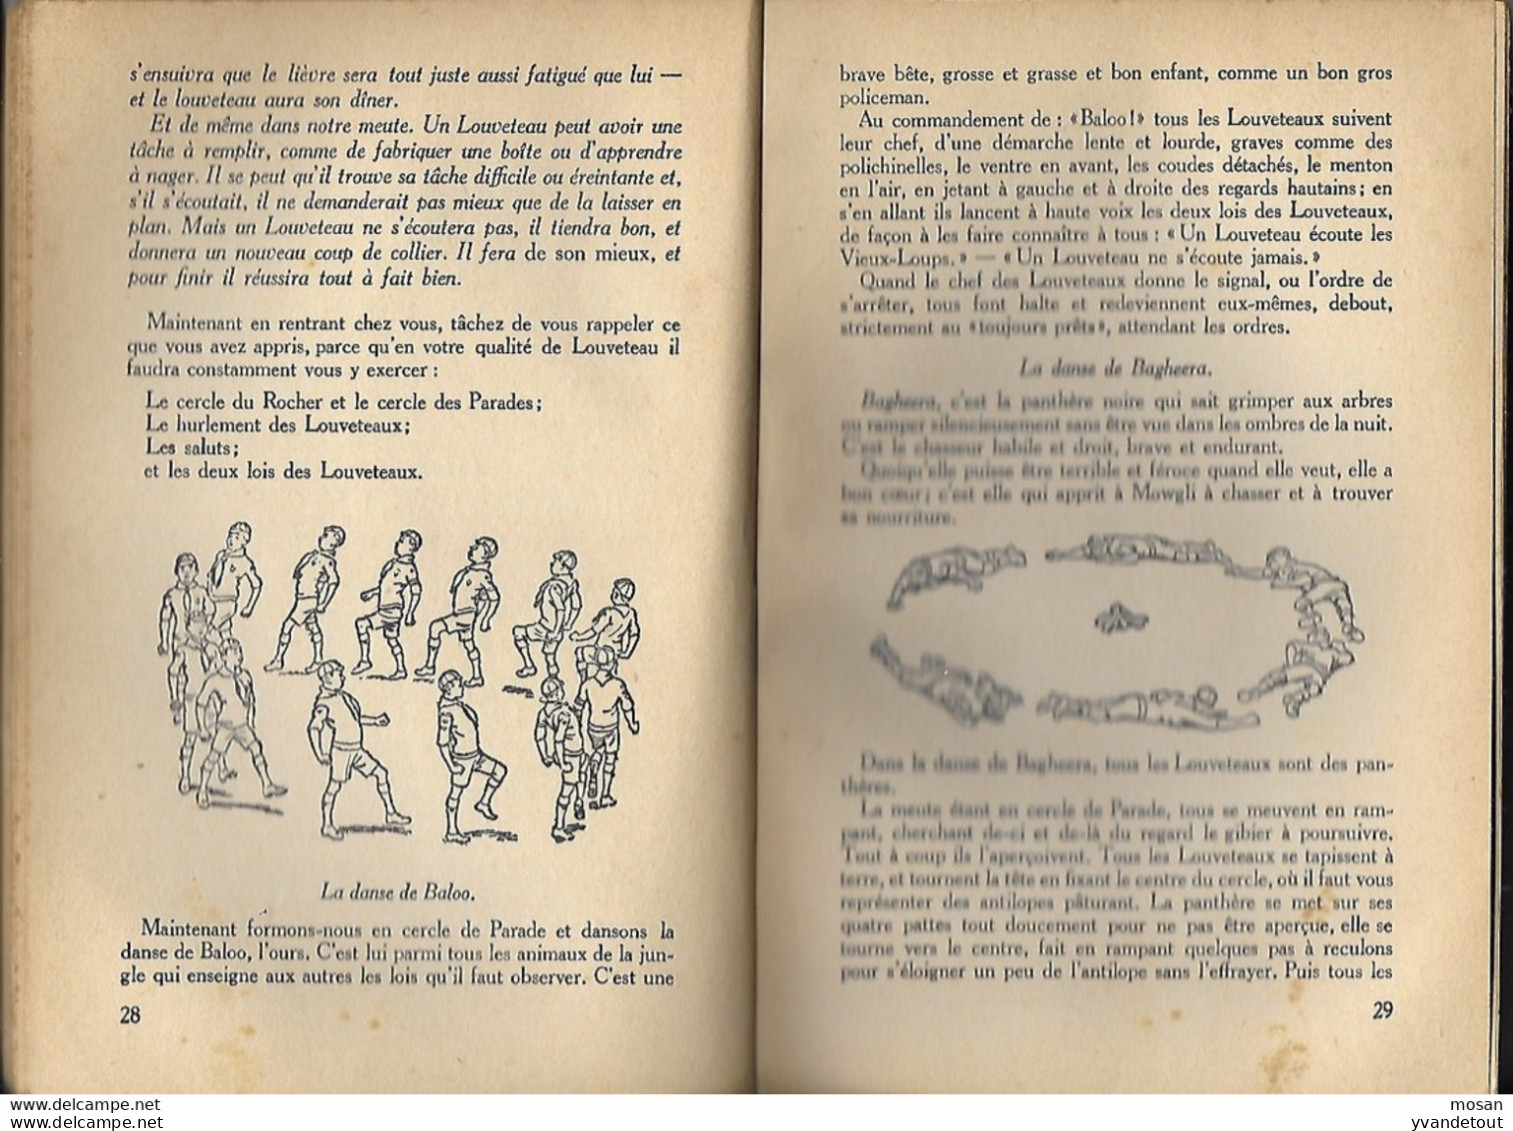 Le Livre Des Louveteaux. Lord Baden-Powell. - Scouting